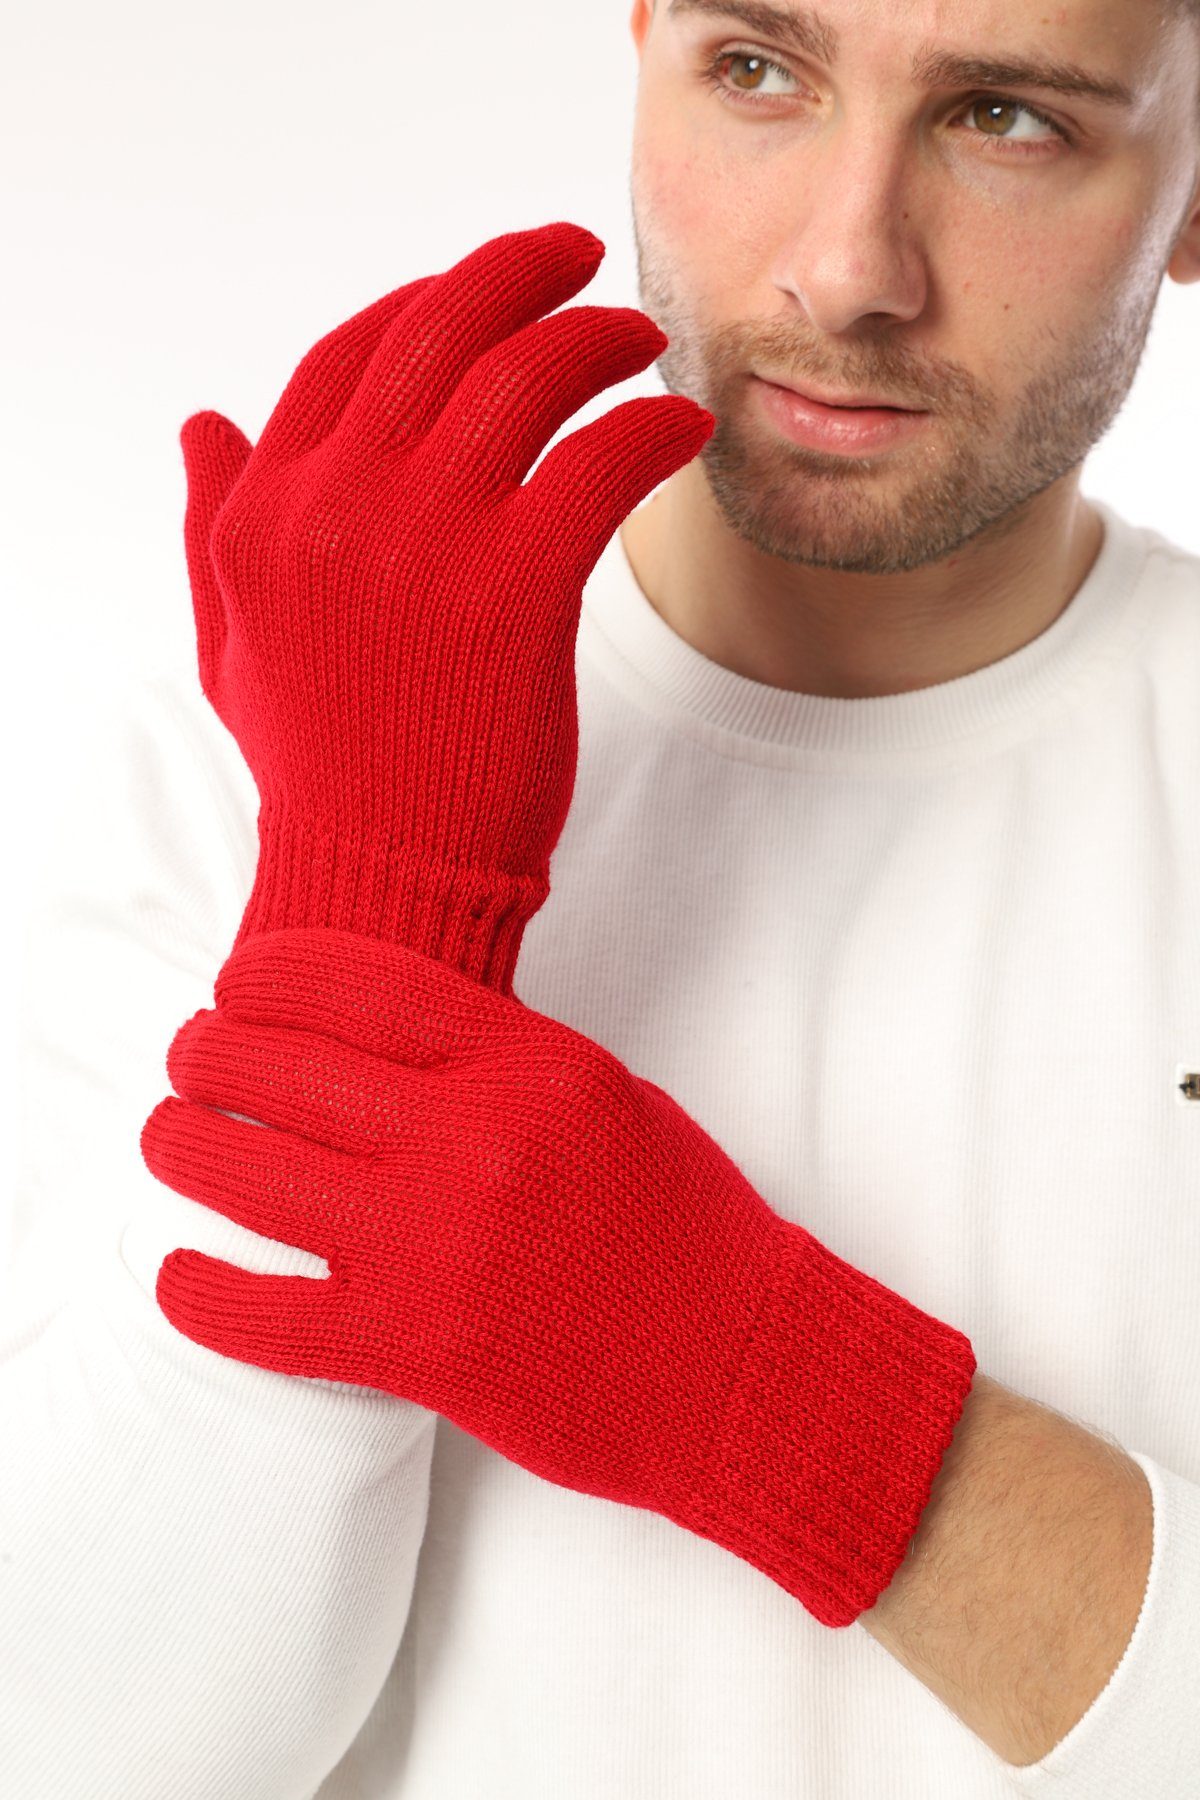 herémood Strickhandschuhe Handschuhe Winterhandschuhe Rippstrick Strickhandschuhe Herren Rot